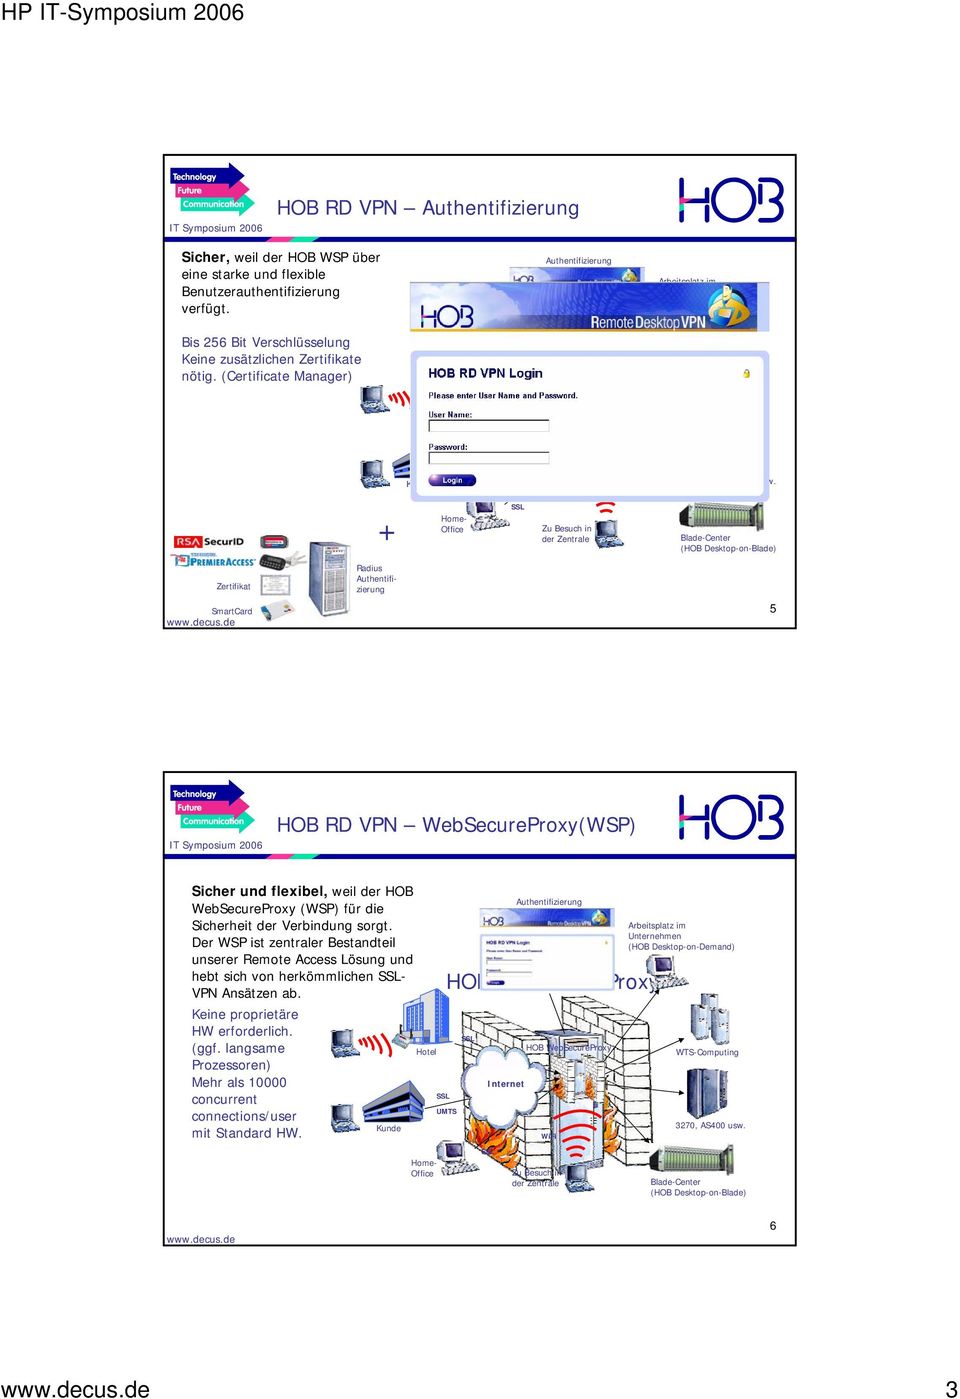 + Home- Office Zu Besuch in der Zentrale Blade-Center (HOB Desktop-on-Blade) Zertifikat SmartCard Radius Authentifizierung 5 HOB RD VPN WebSecureProxy(WSP) Sicher und flexibel, weil der HOB